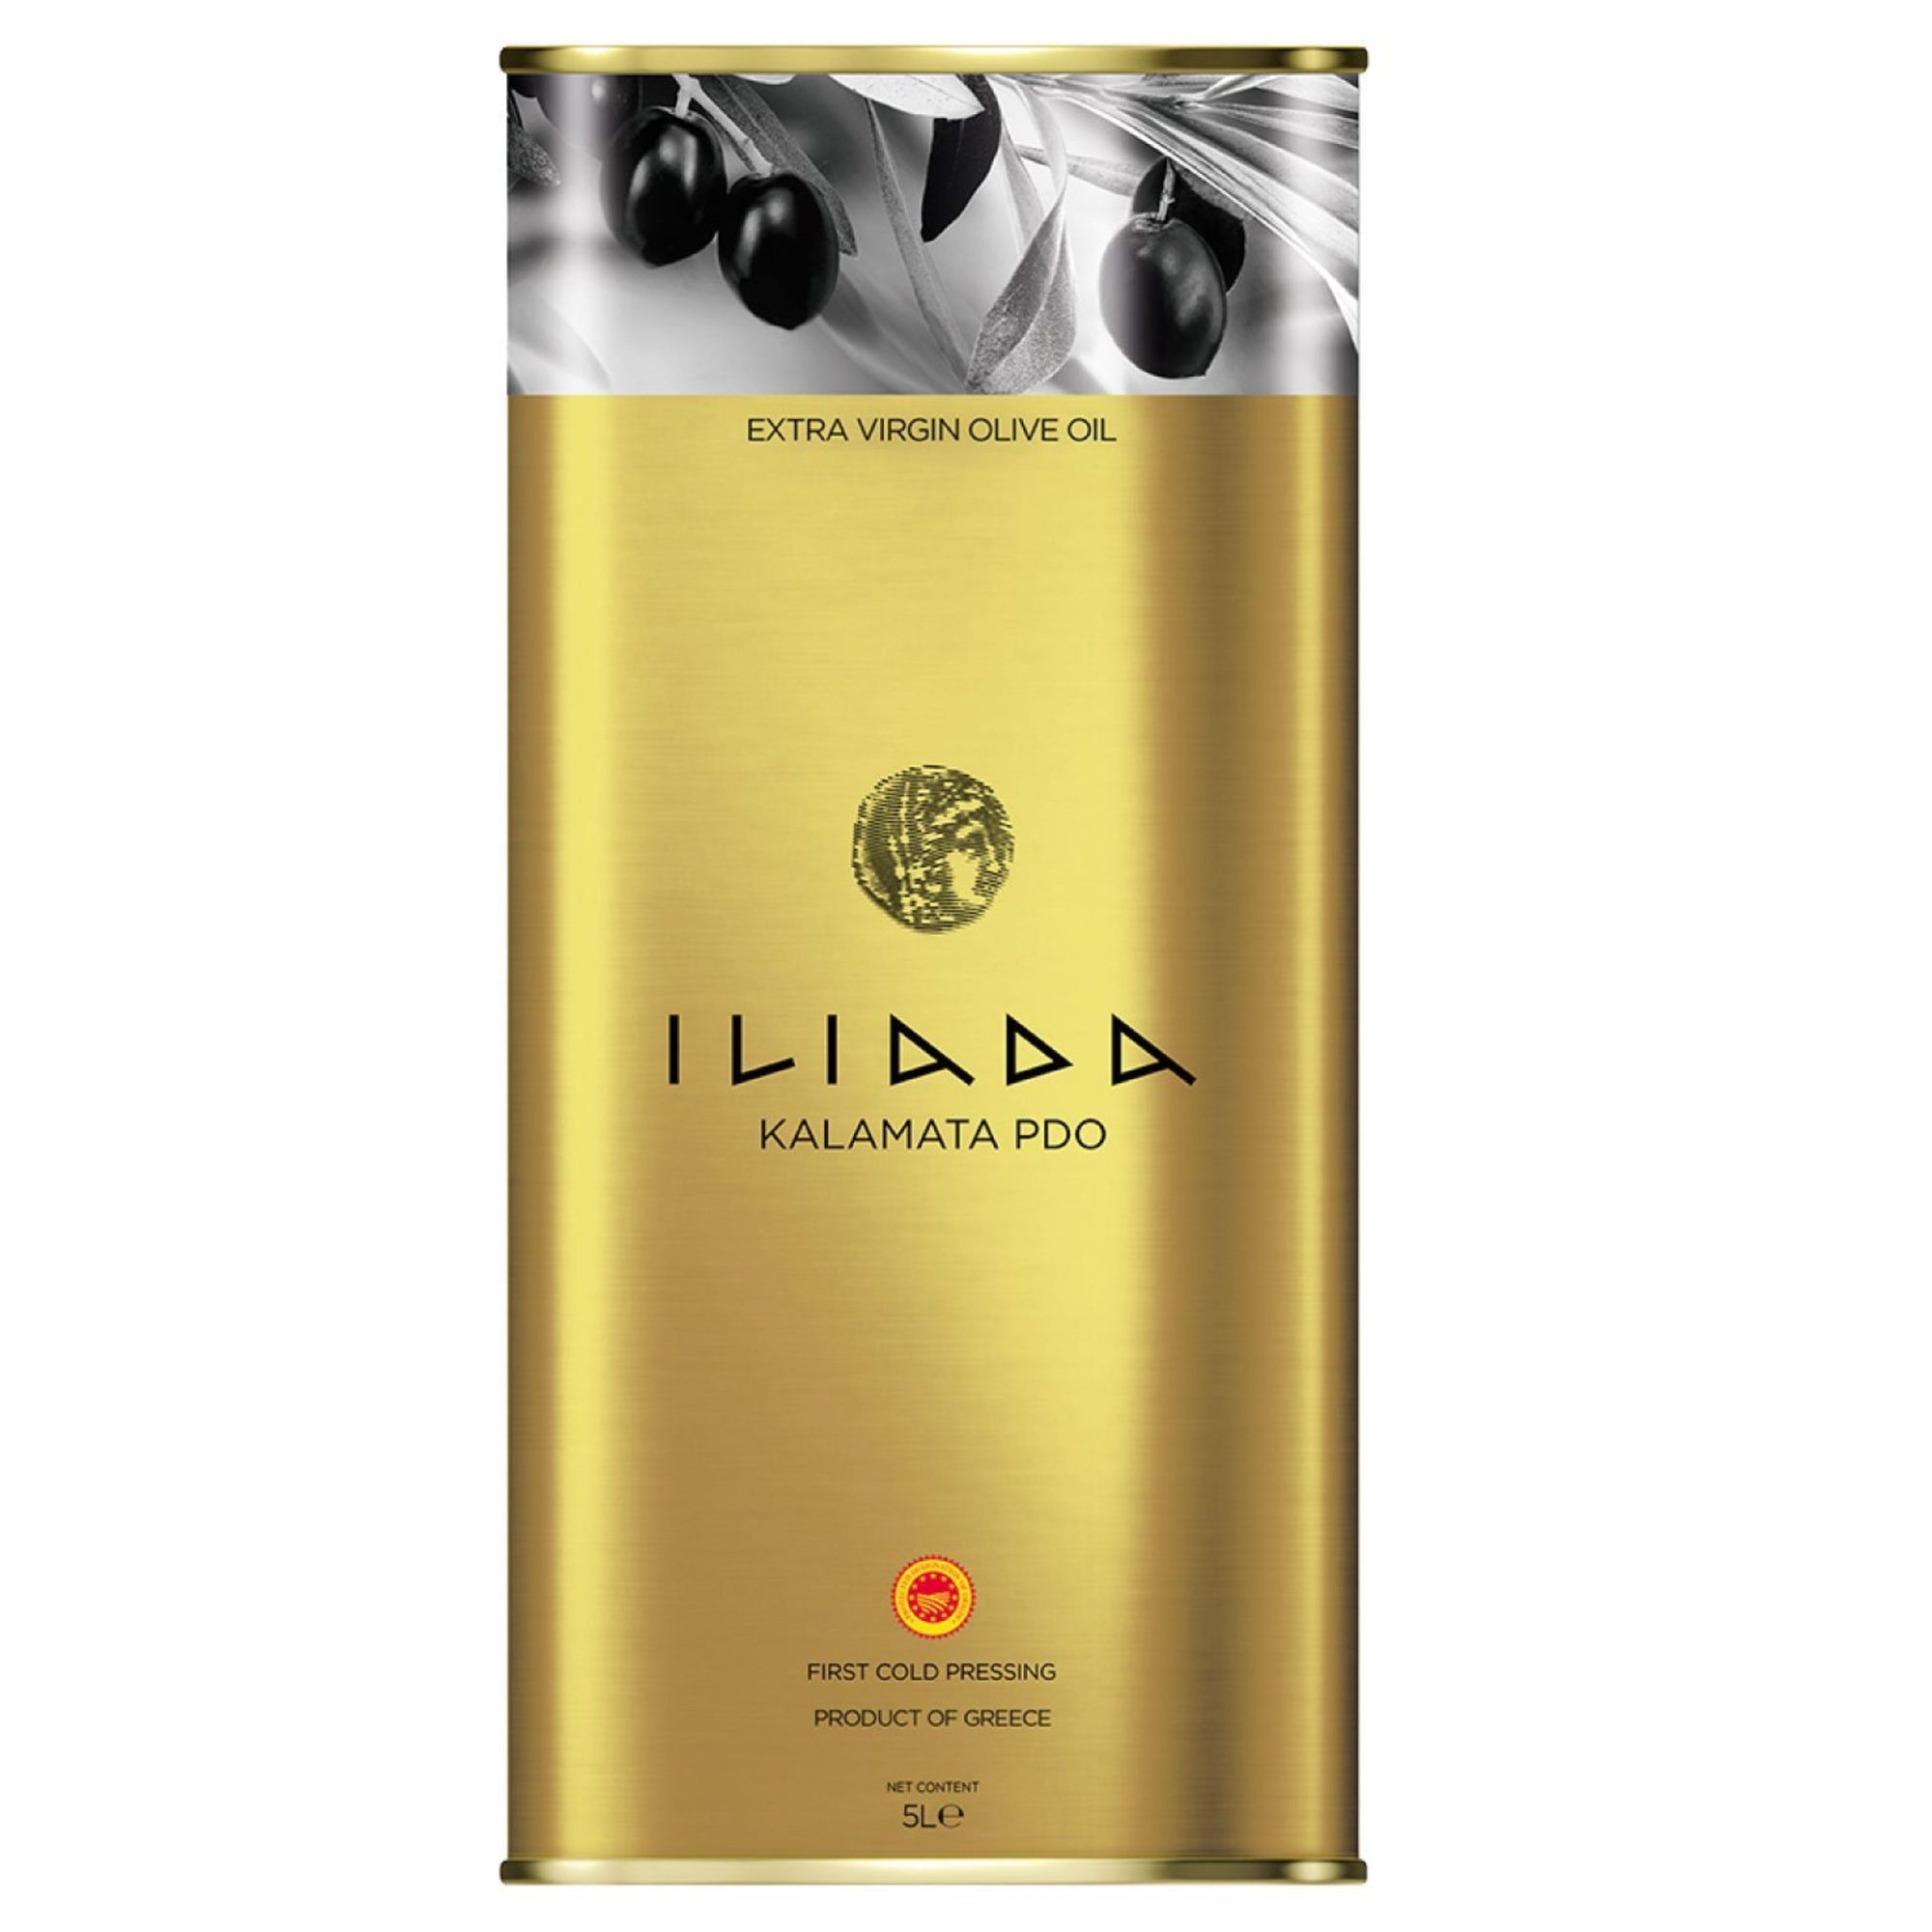 Extra Virgin Olive Oil Kalamata PDO 'Iliada' 5L tin